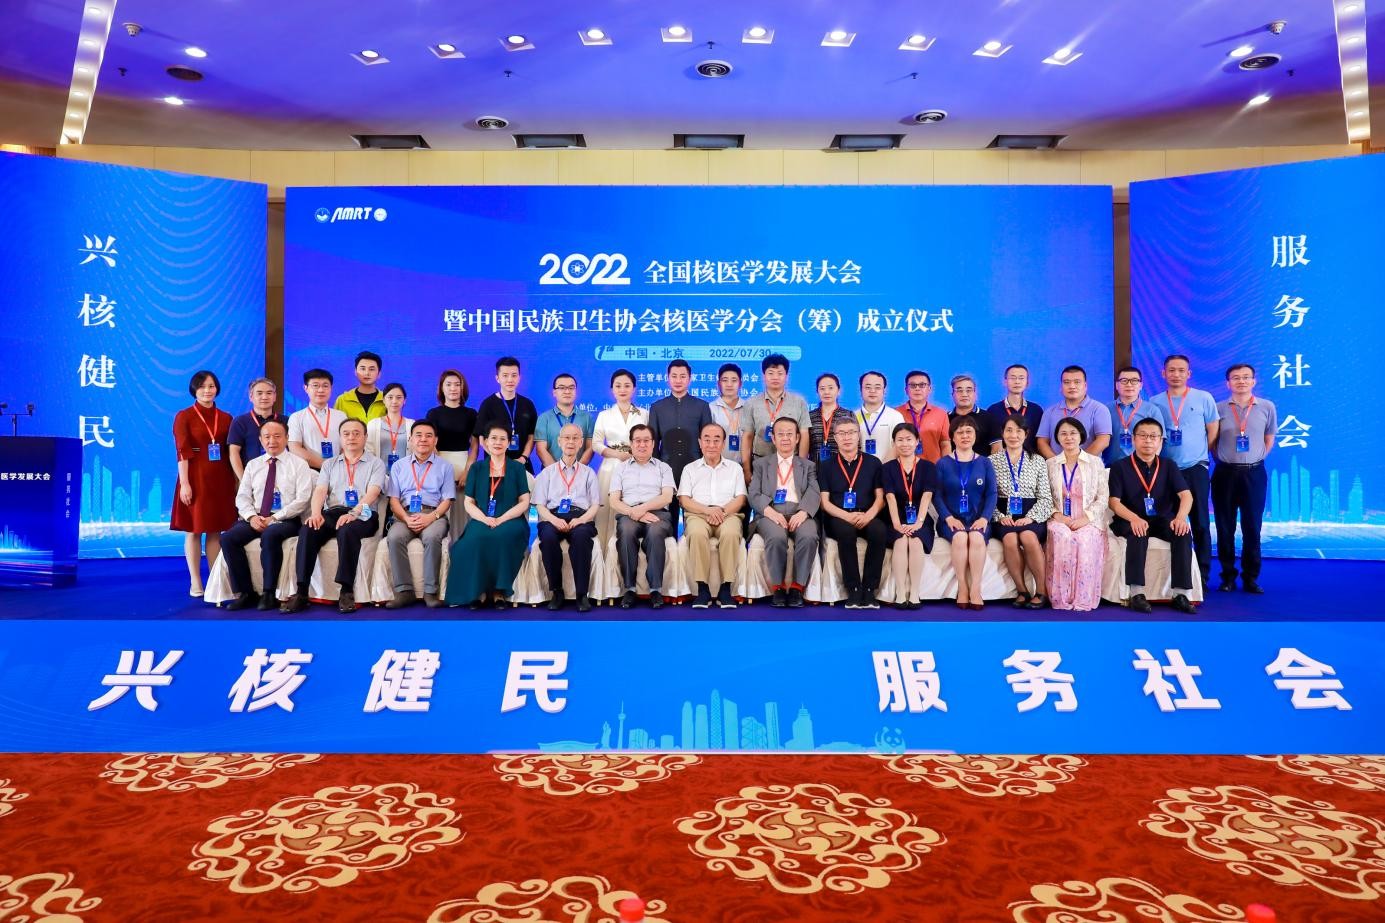 首届核医学发展大会暨中国民族卫生协会